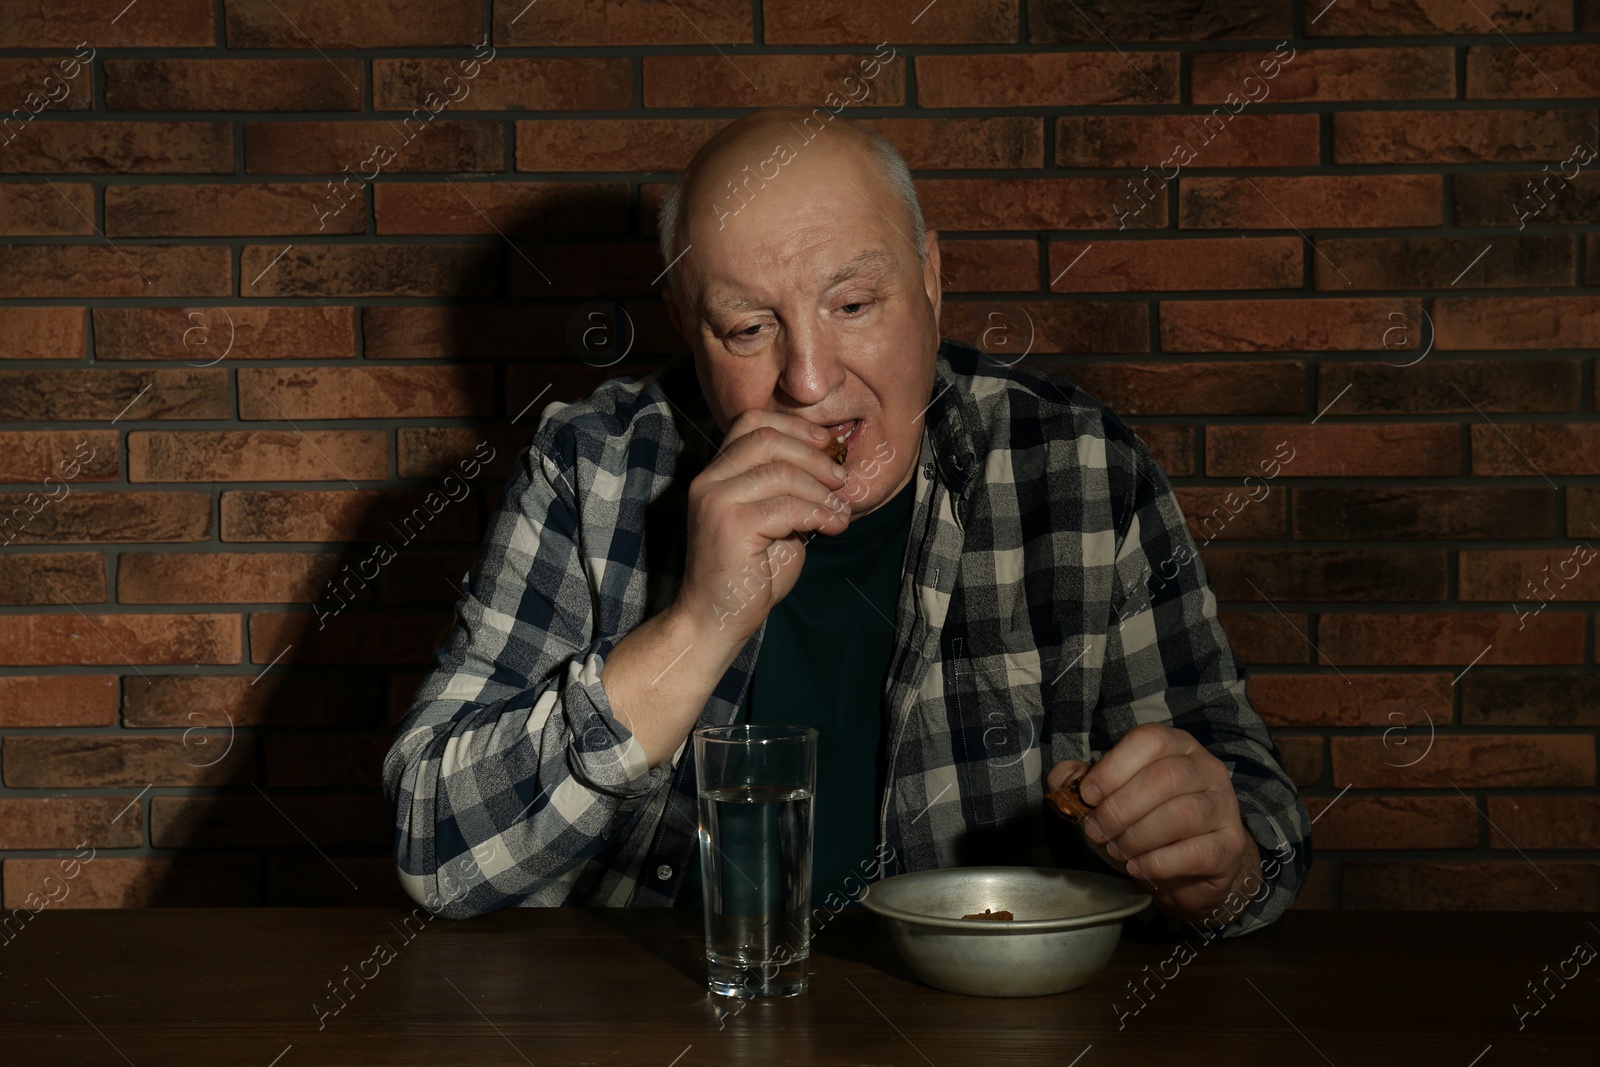 Photo of Poor senior man eating bread at table near brick wall